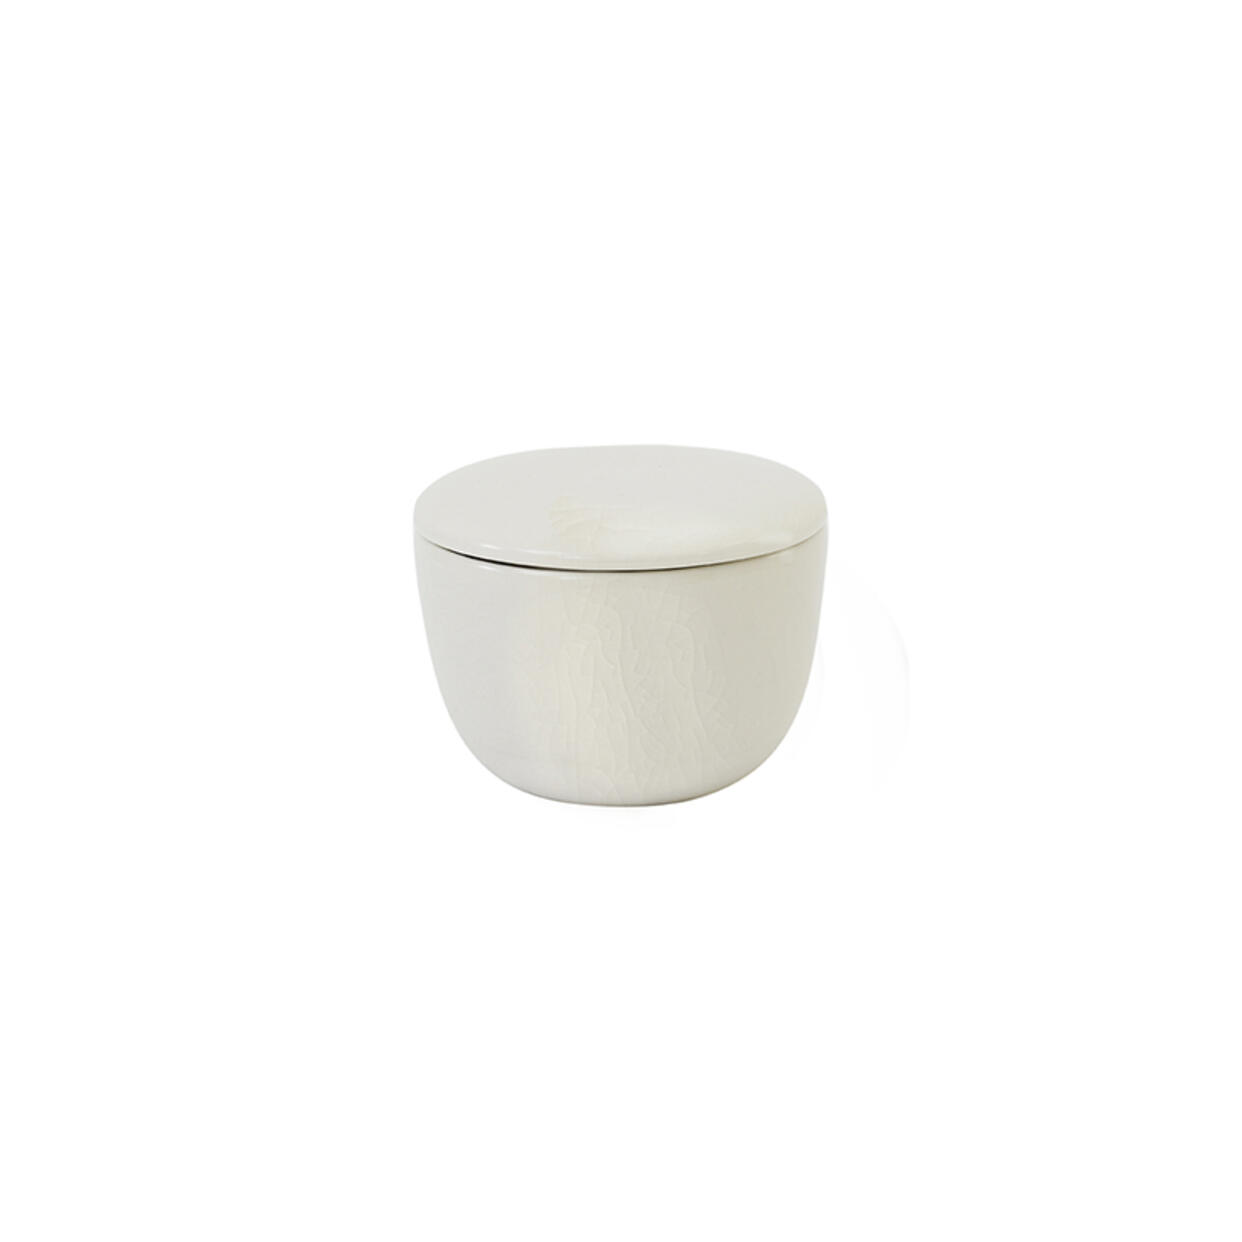 Sugar bowl Maguelone quartz ceramic tableware